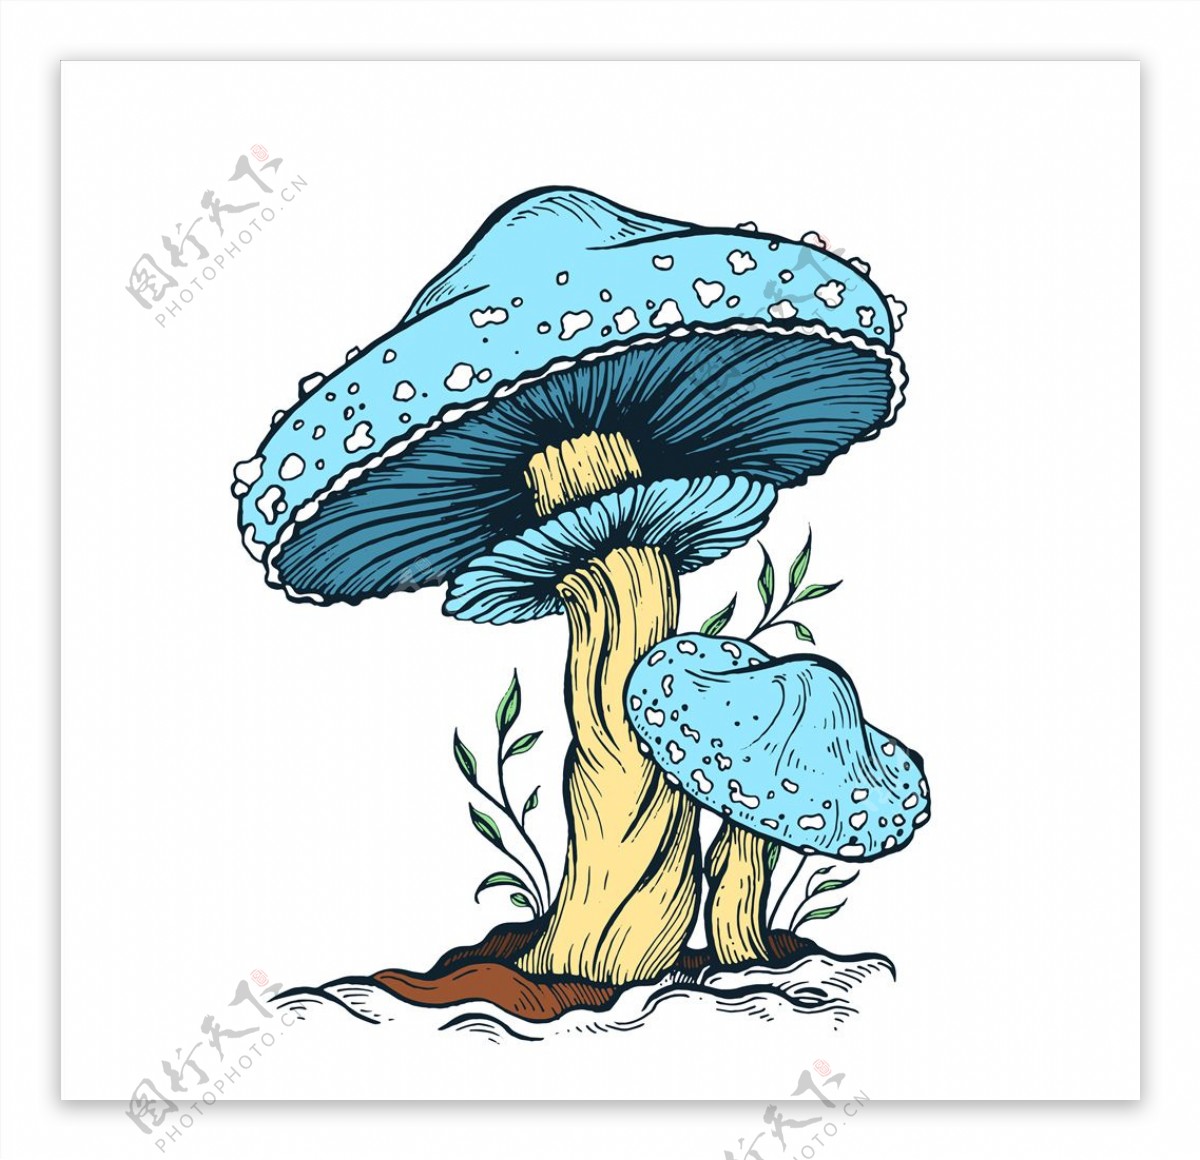 蘑菇形象背景